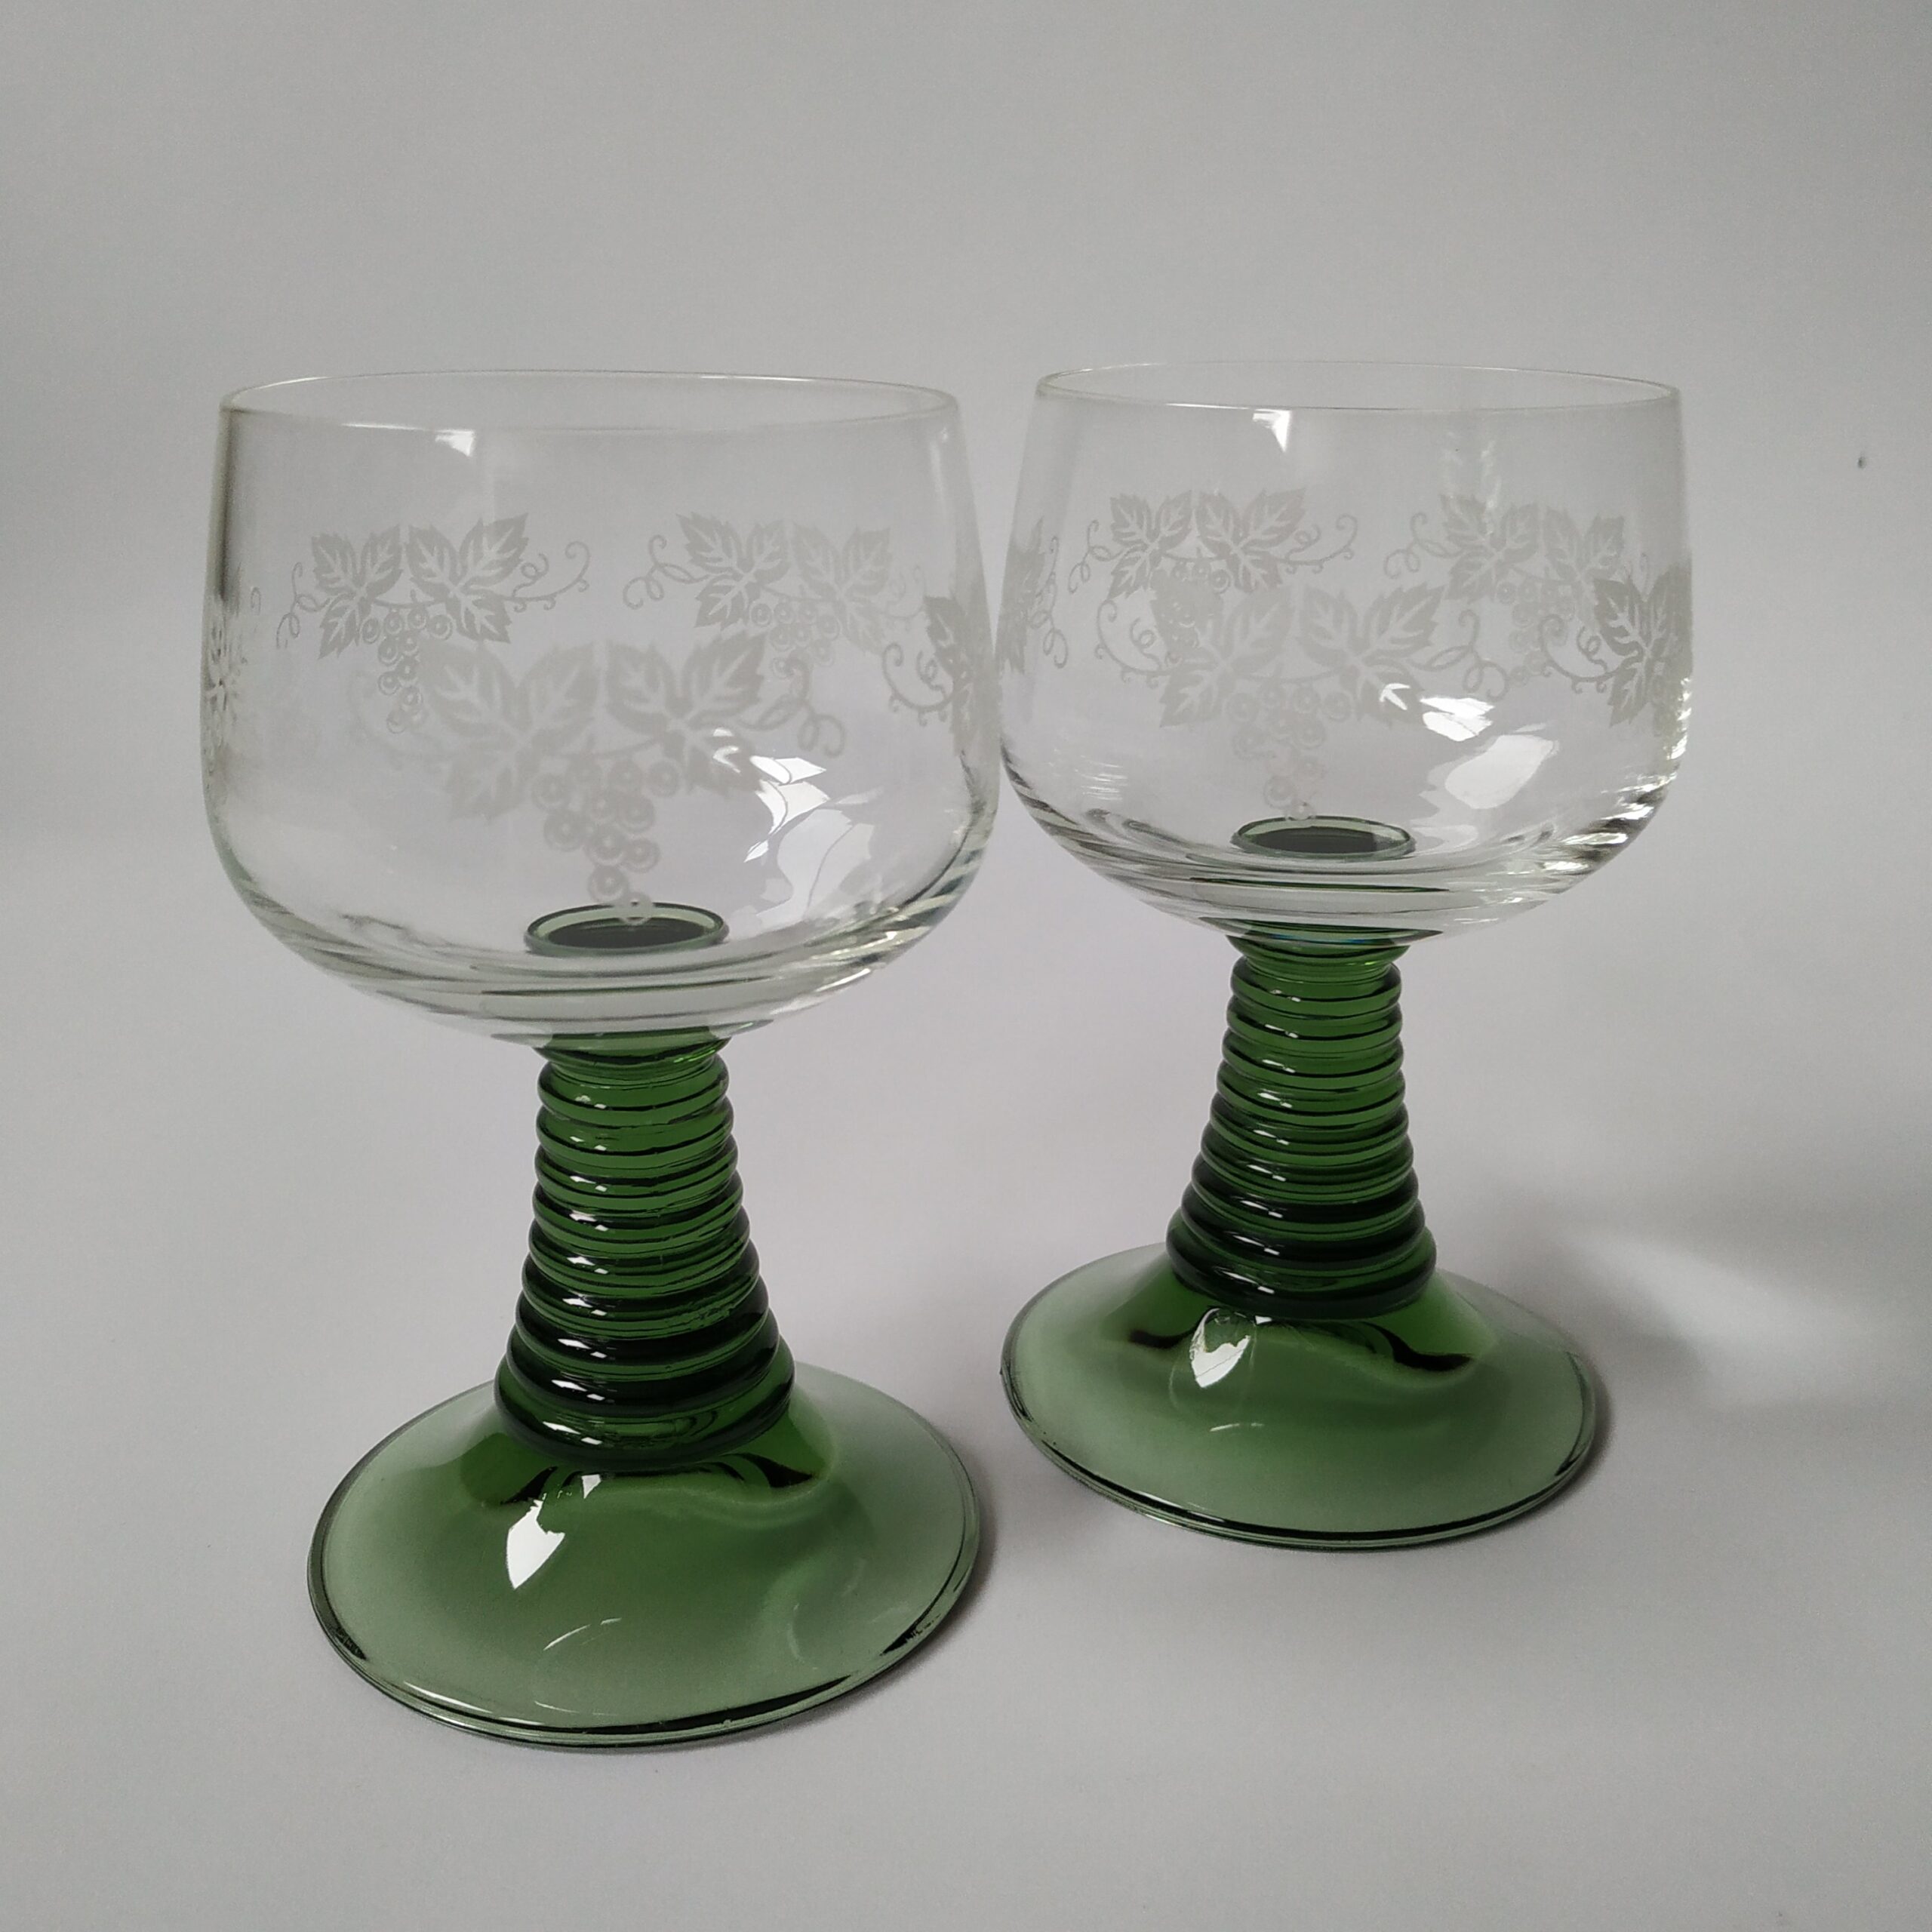 Wijnglazen – moezelglazen met groene voet – afbeelding druiventak – inhoud 200 ml (1)